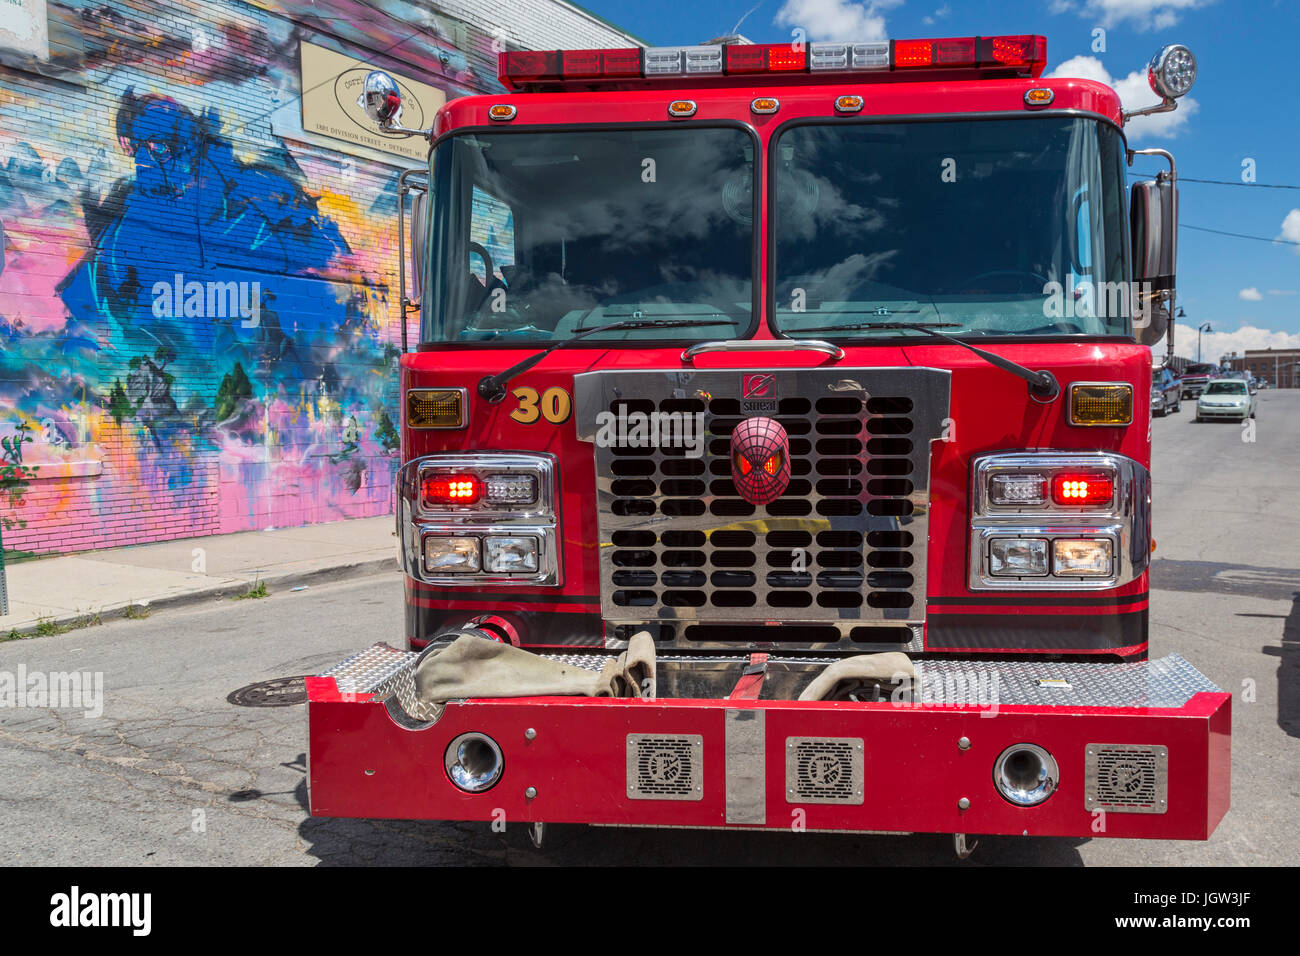 Feuerwehr ausrüstungsset feuerwehrauto stahlleiter gasmaske